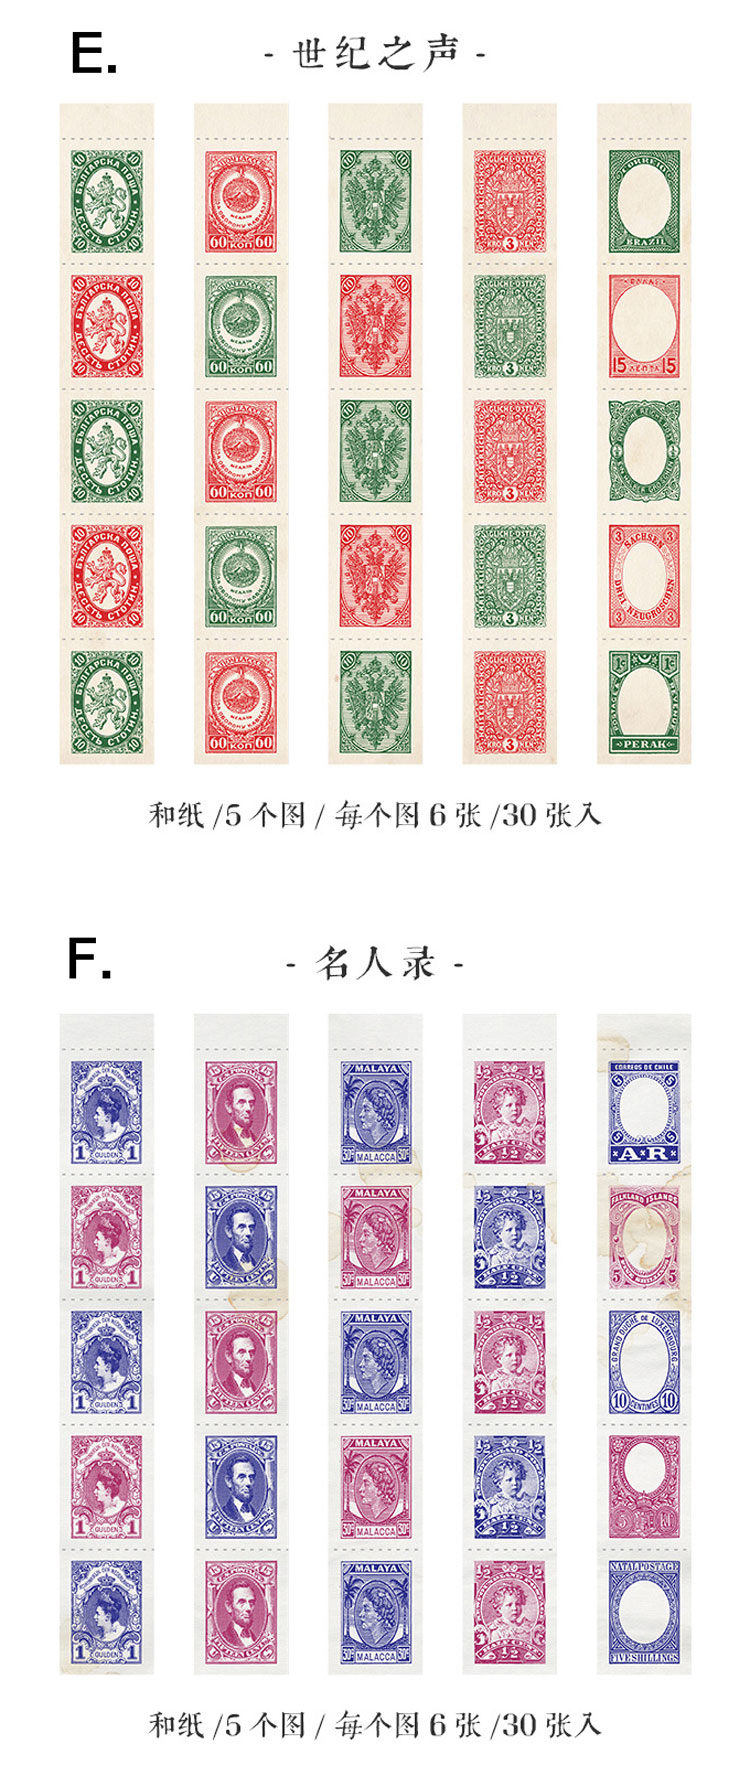 切手 ロング シール ブック E. 世紀の声 / F. セレブリティブック